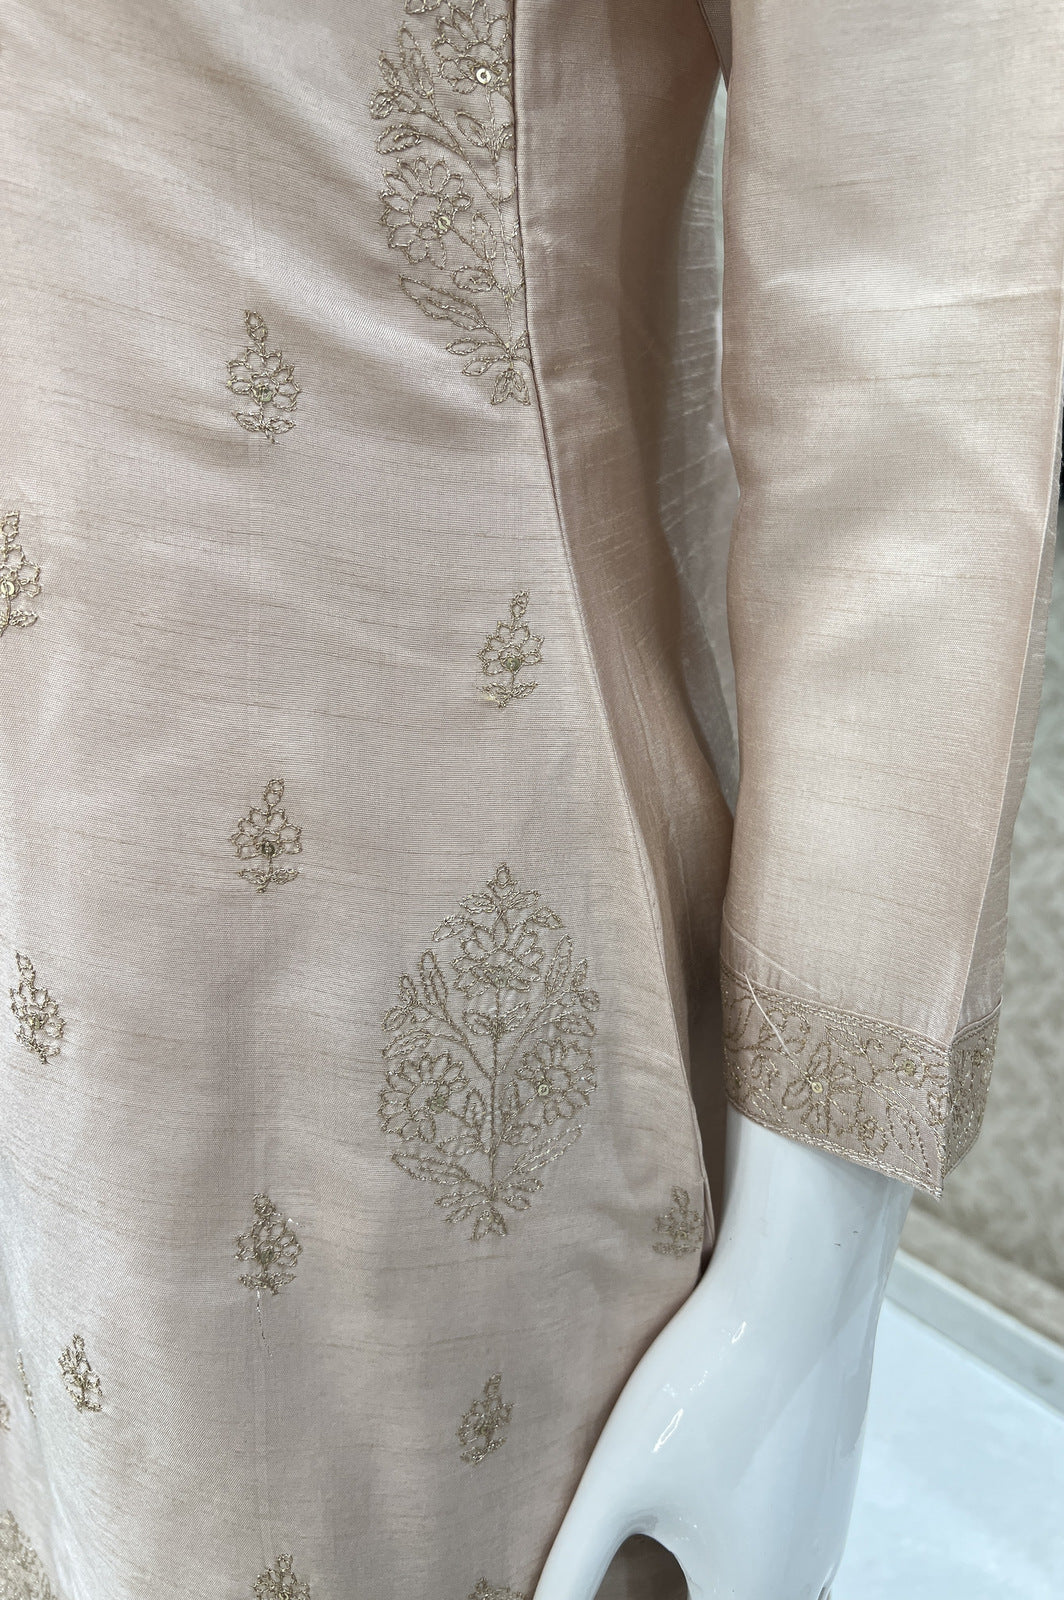 Beige Zari, Zardozi, Sequins, Thread and Mirror work Straight Cut Salwar Suit